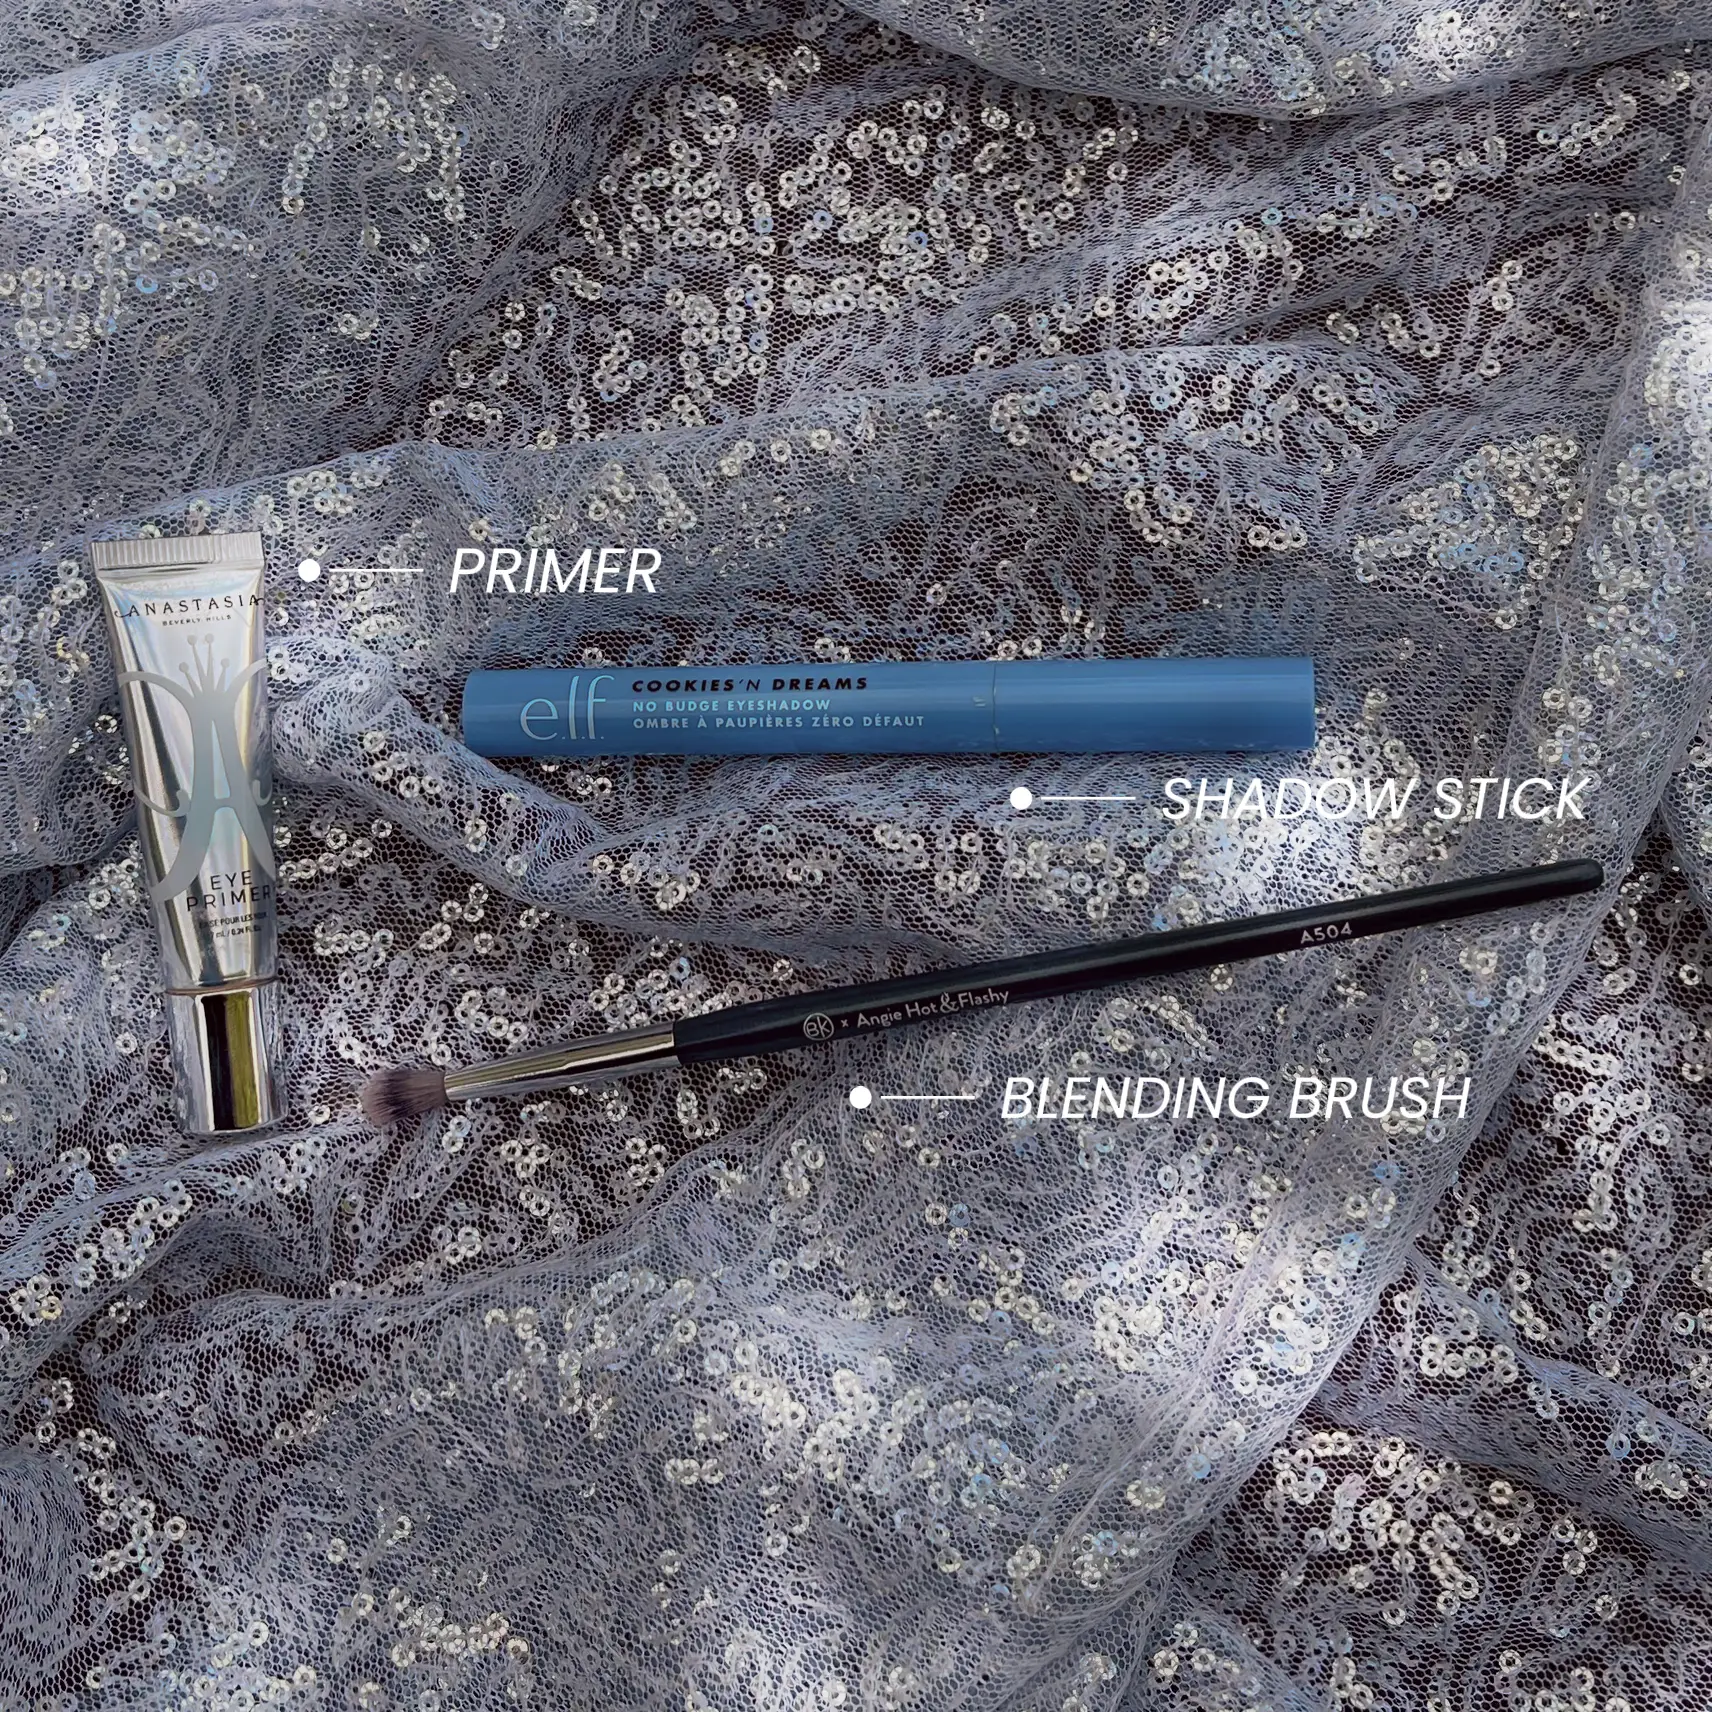 Blending brush technique